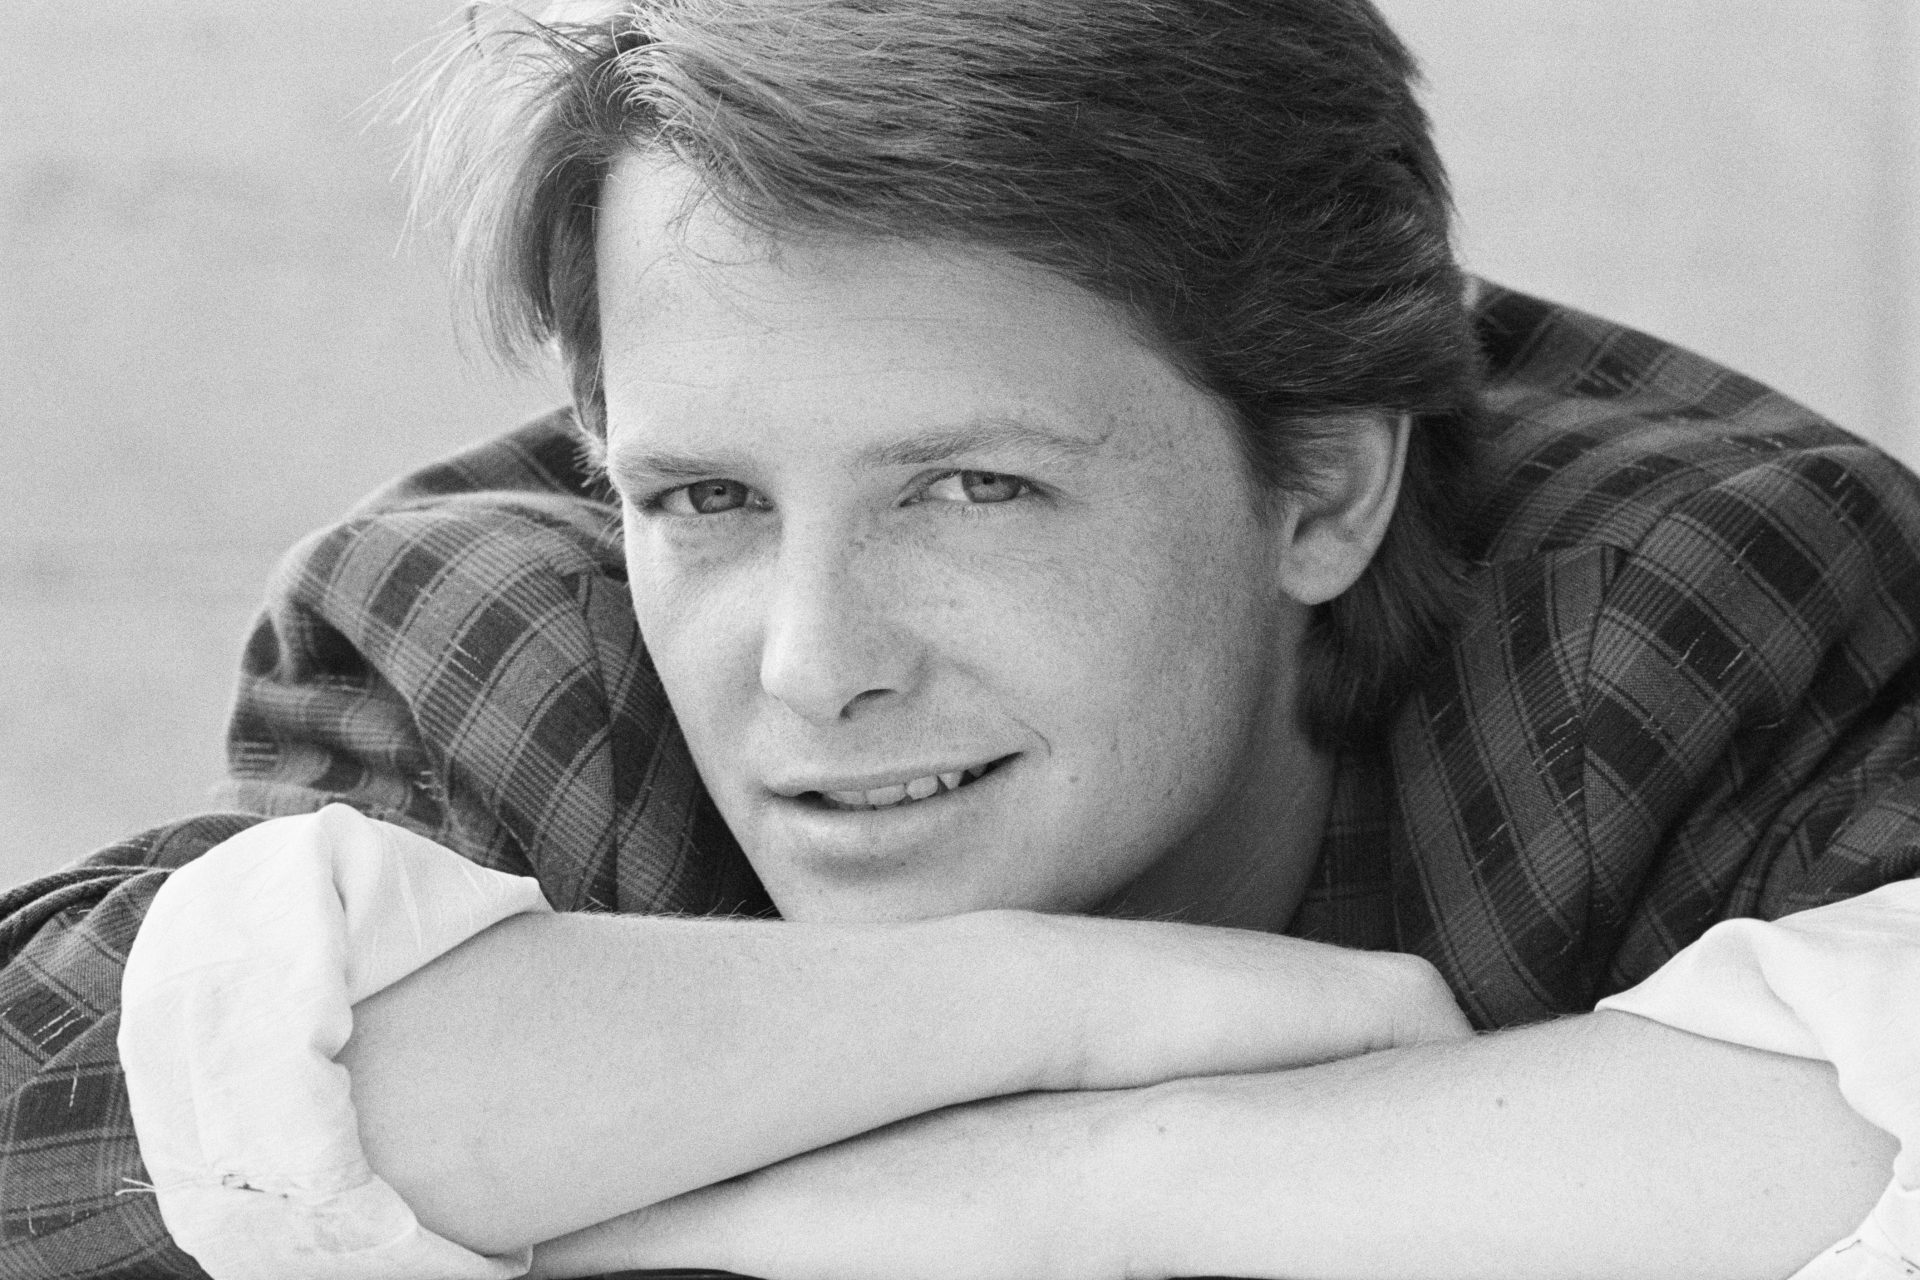 Michael J. Fox ha iniziato la sua carriera di attore negli anni '70